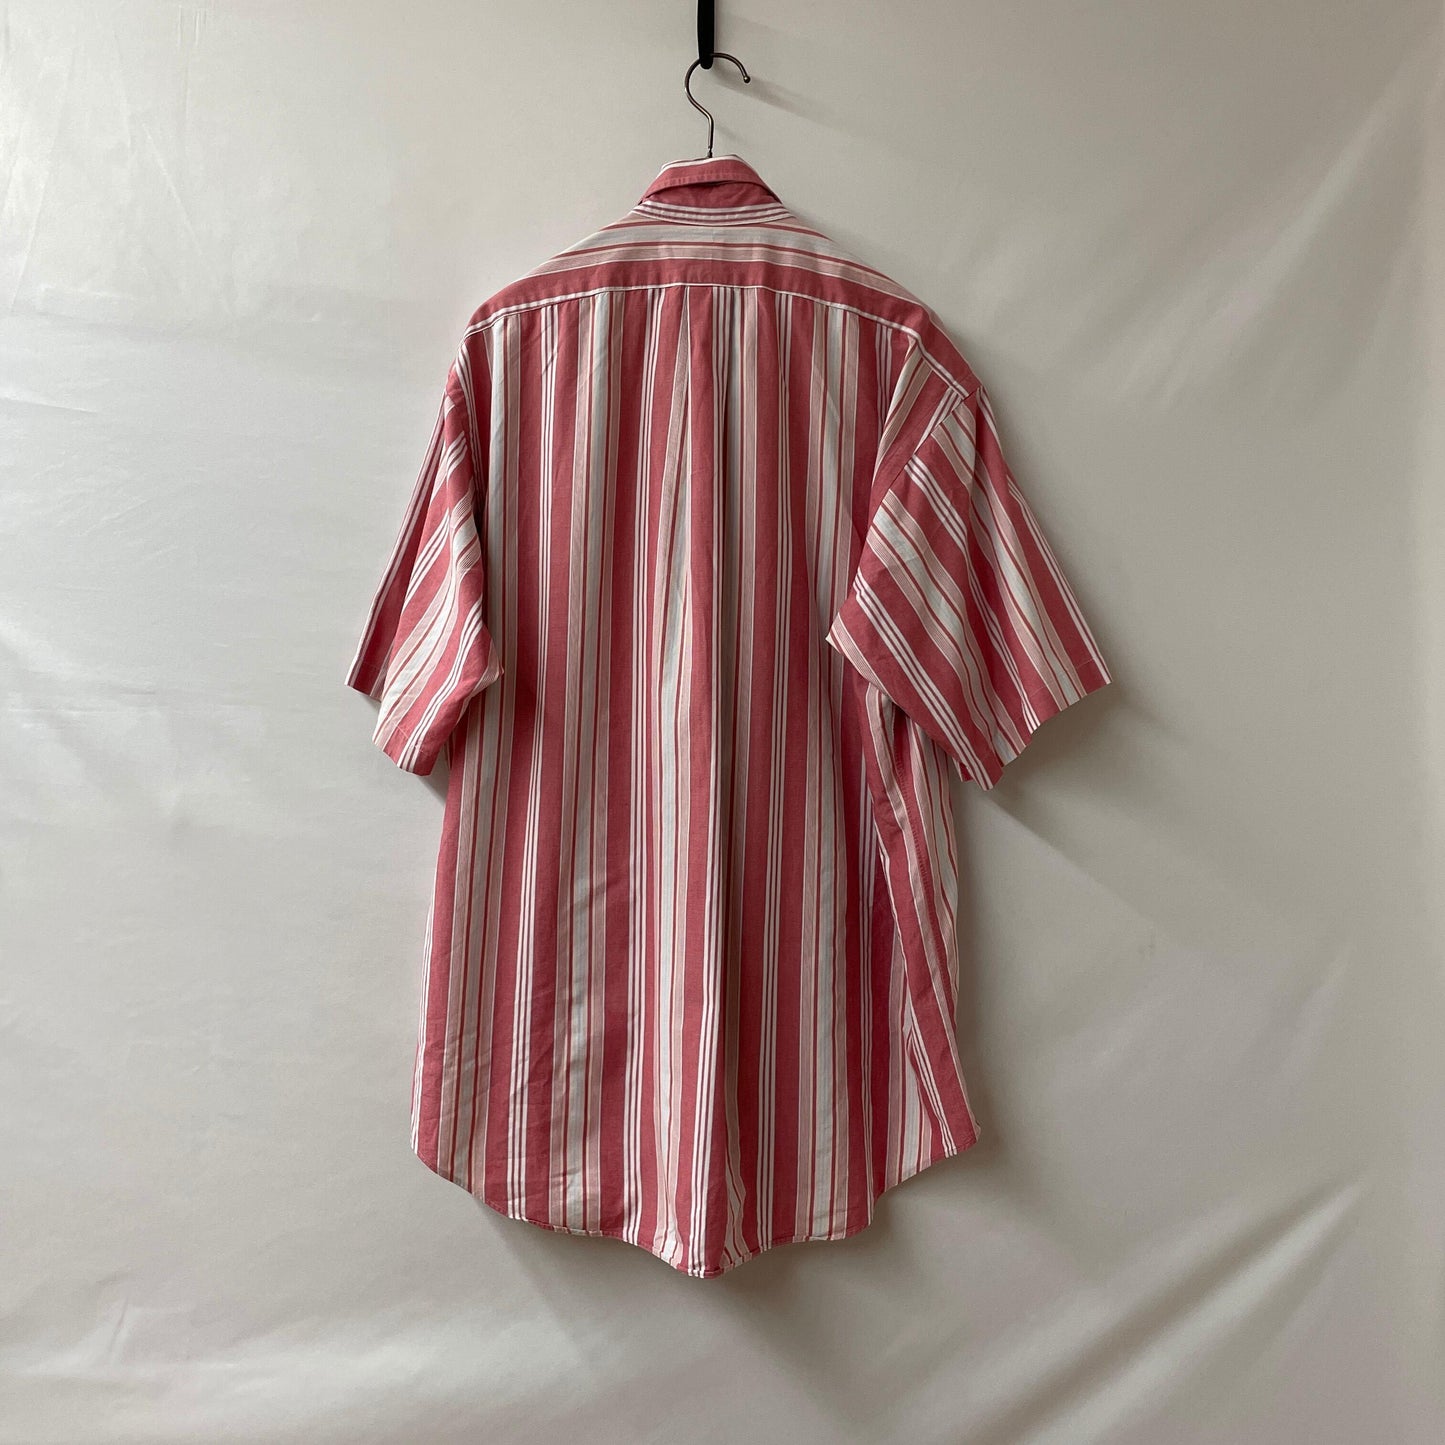 Ralph Lauren striped shirt sum